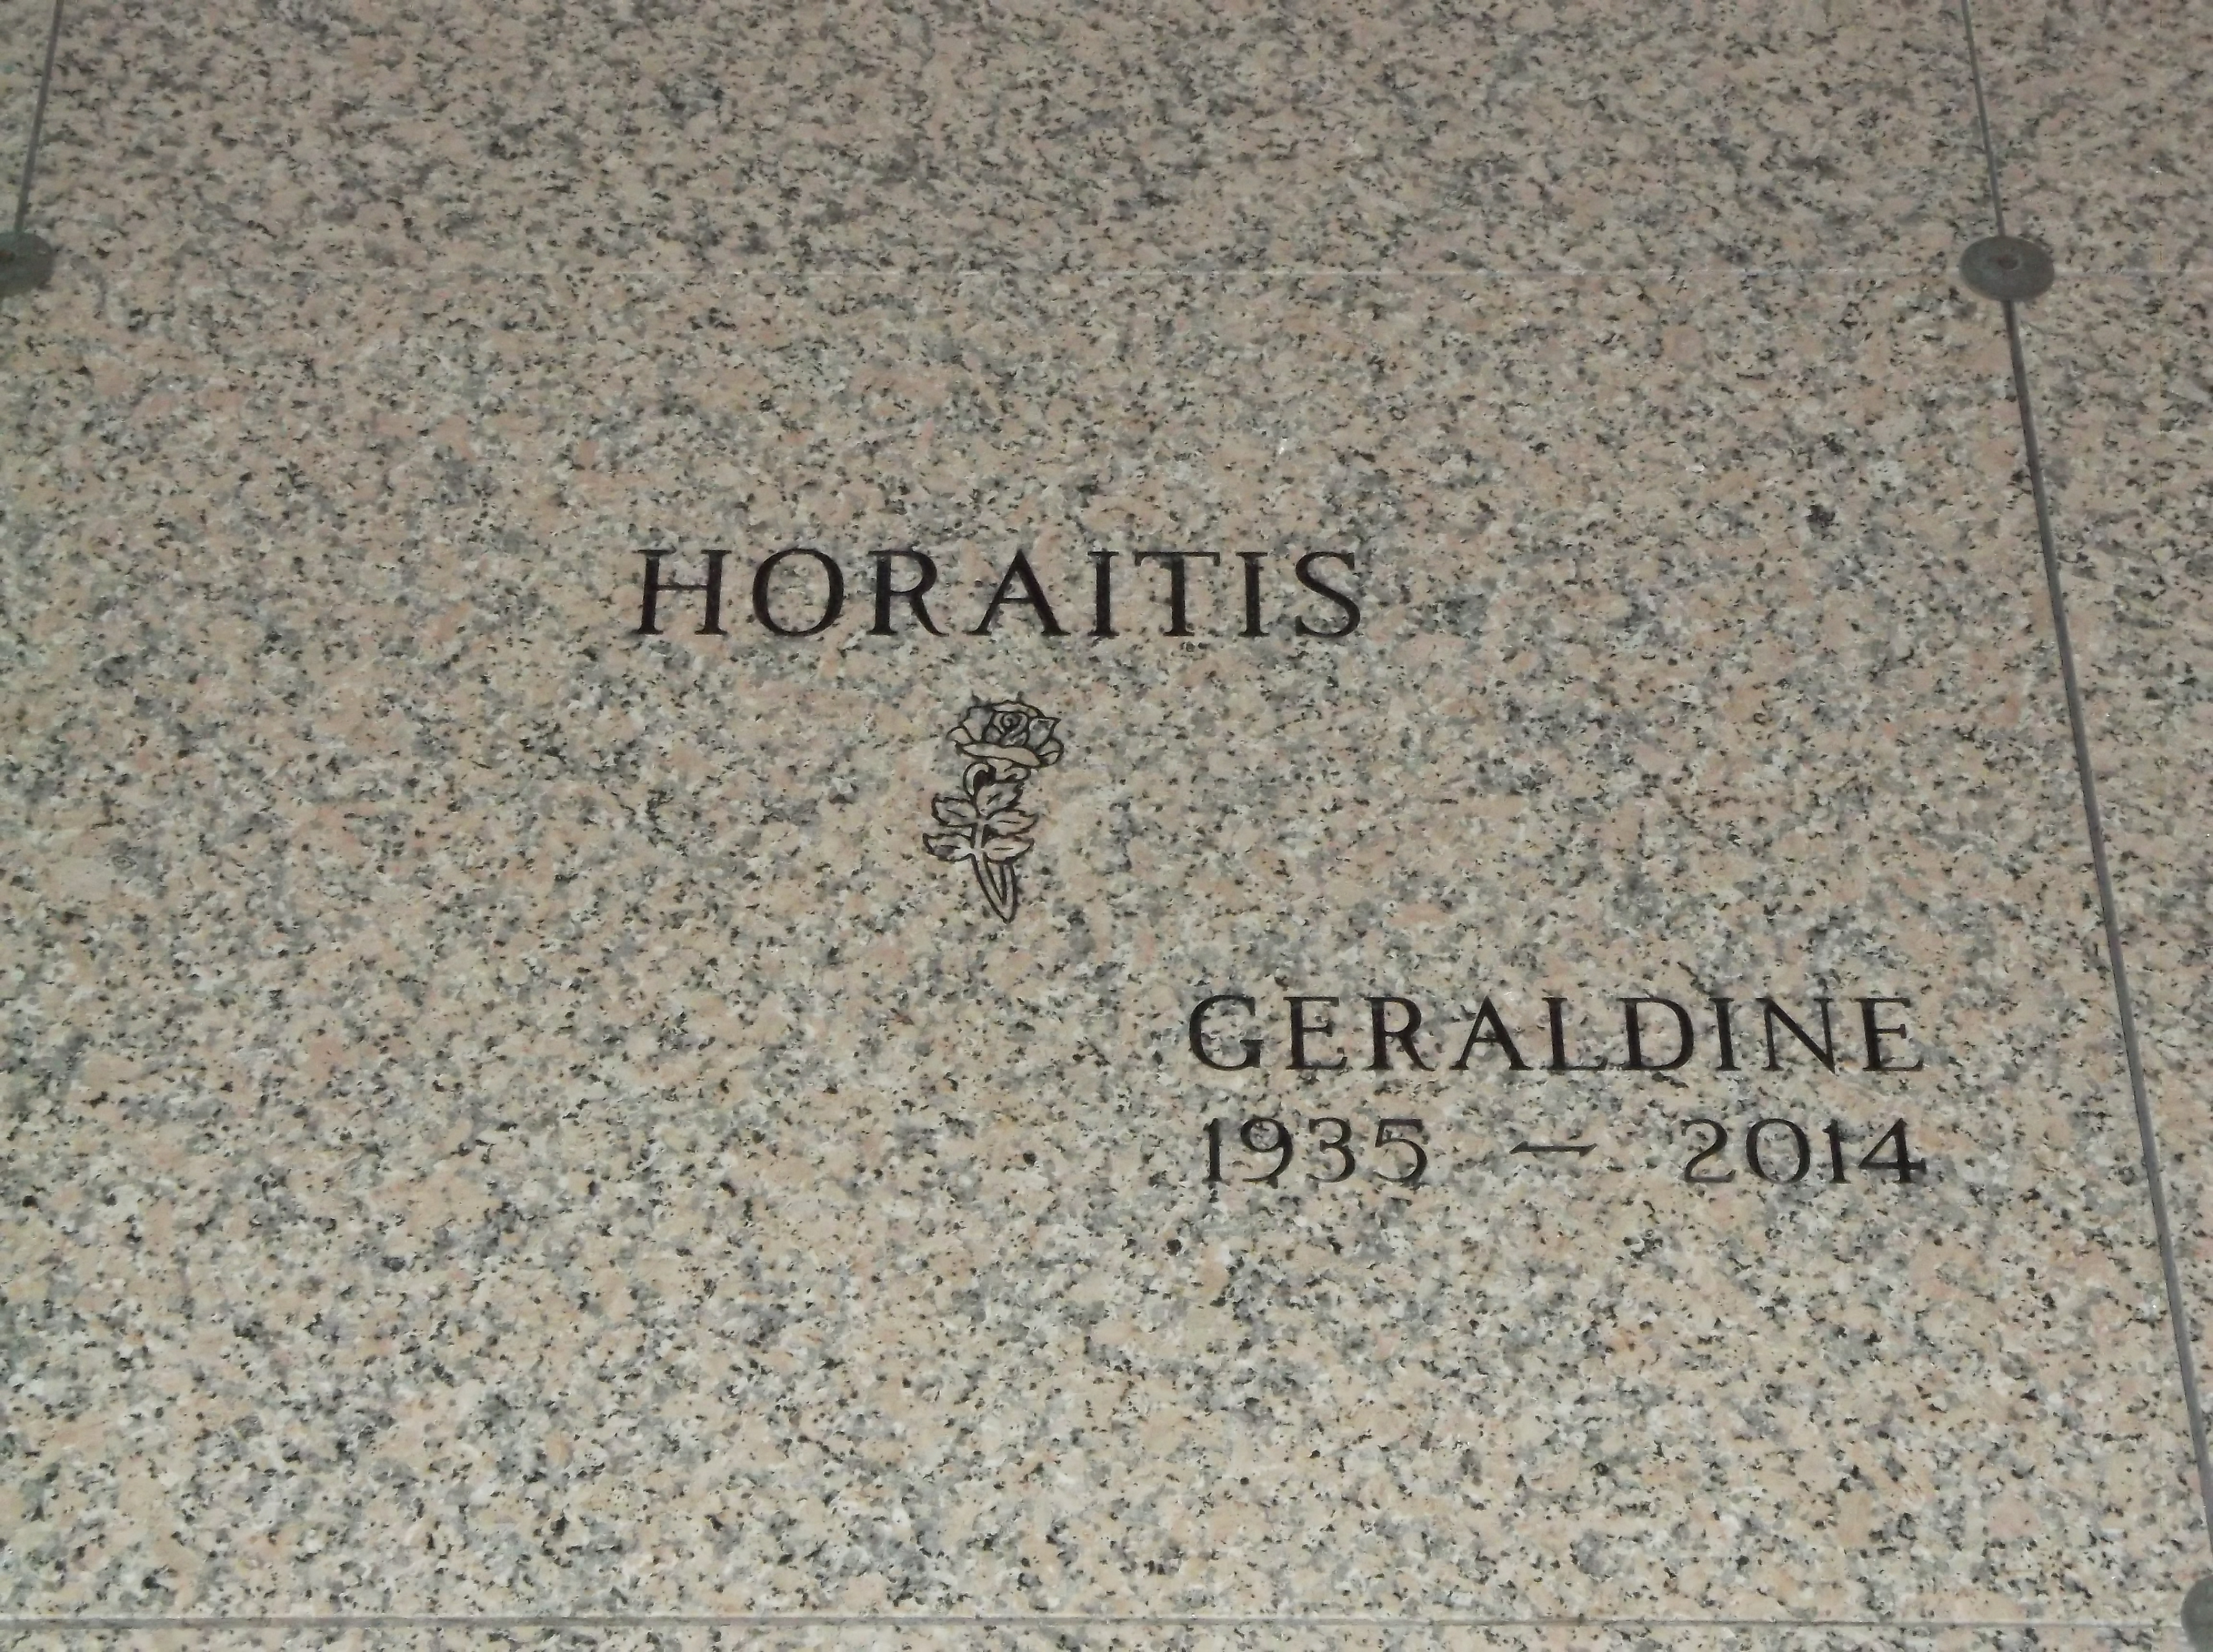 Geraldine Horaitis